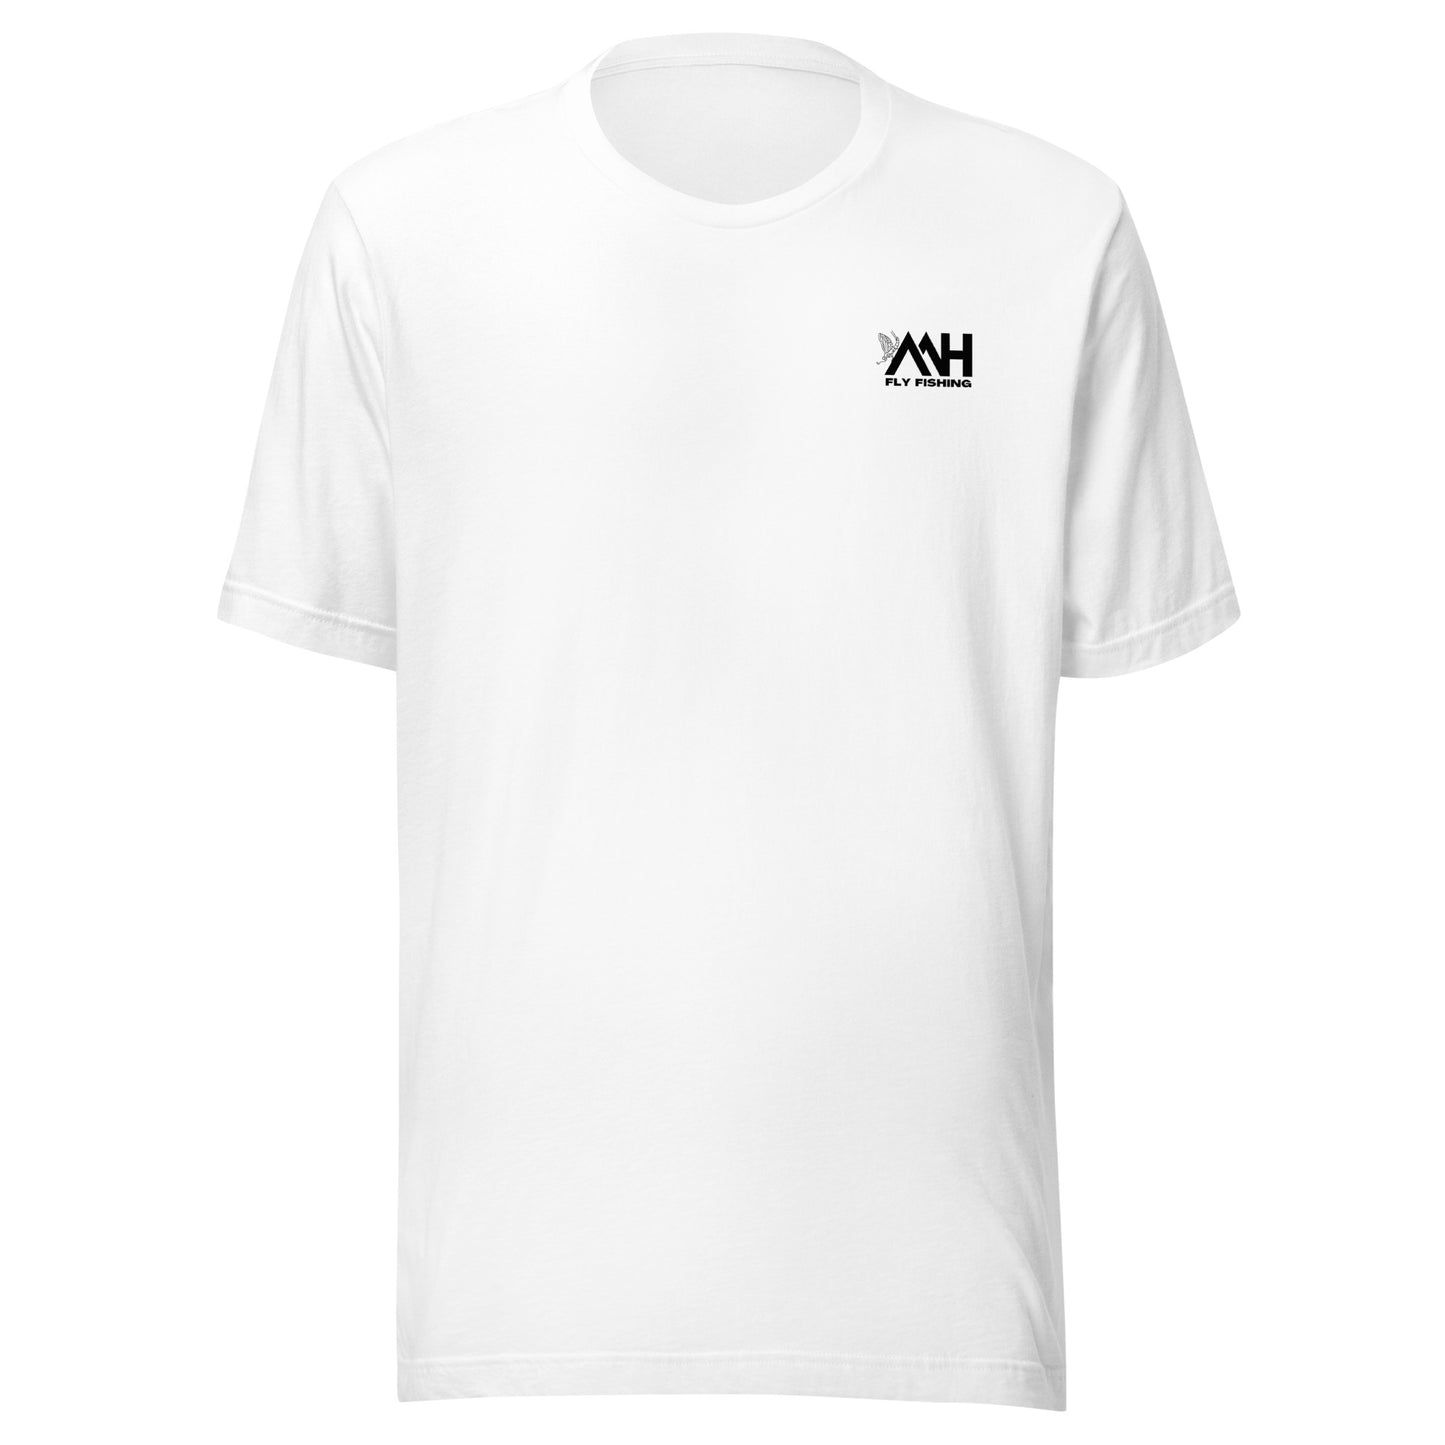 MH Trout Flies Unisex t-shirt